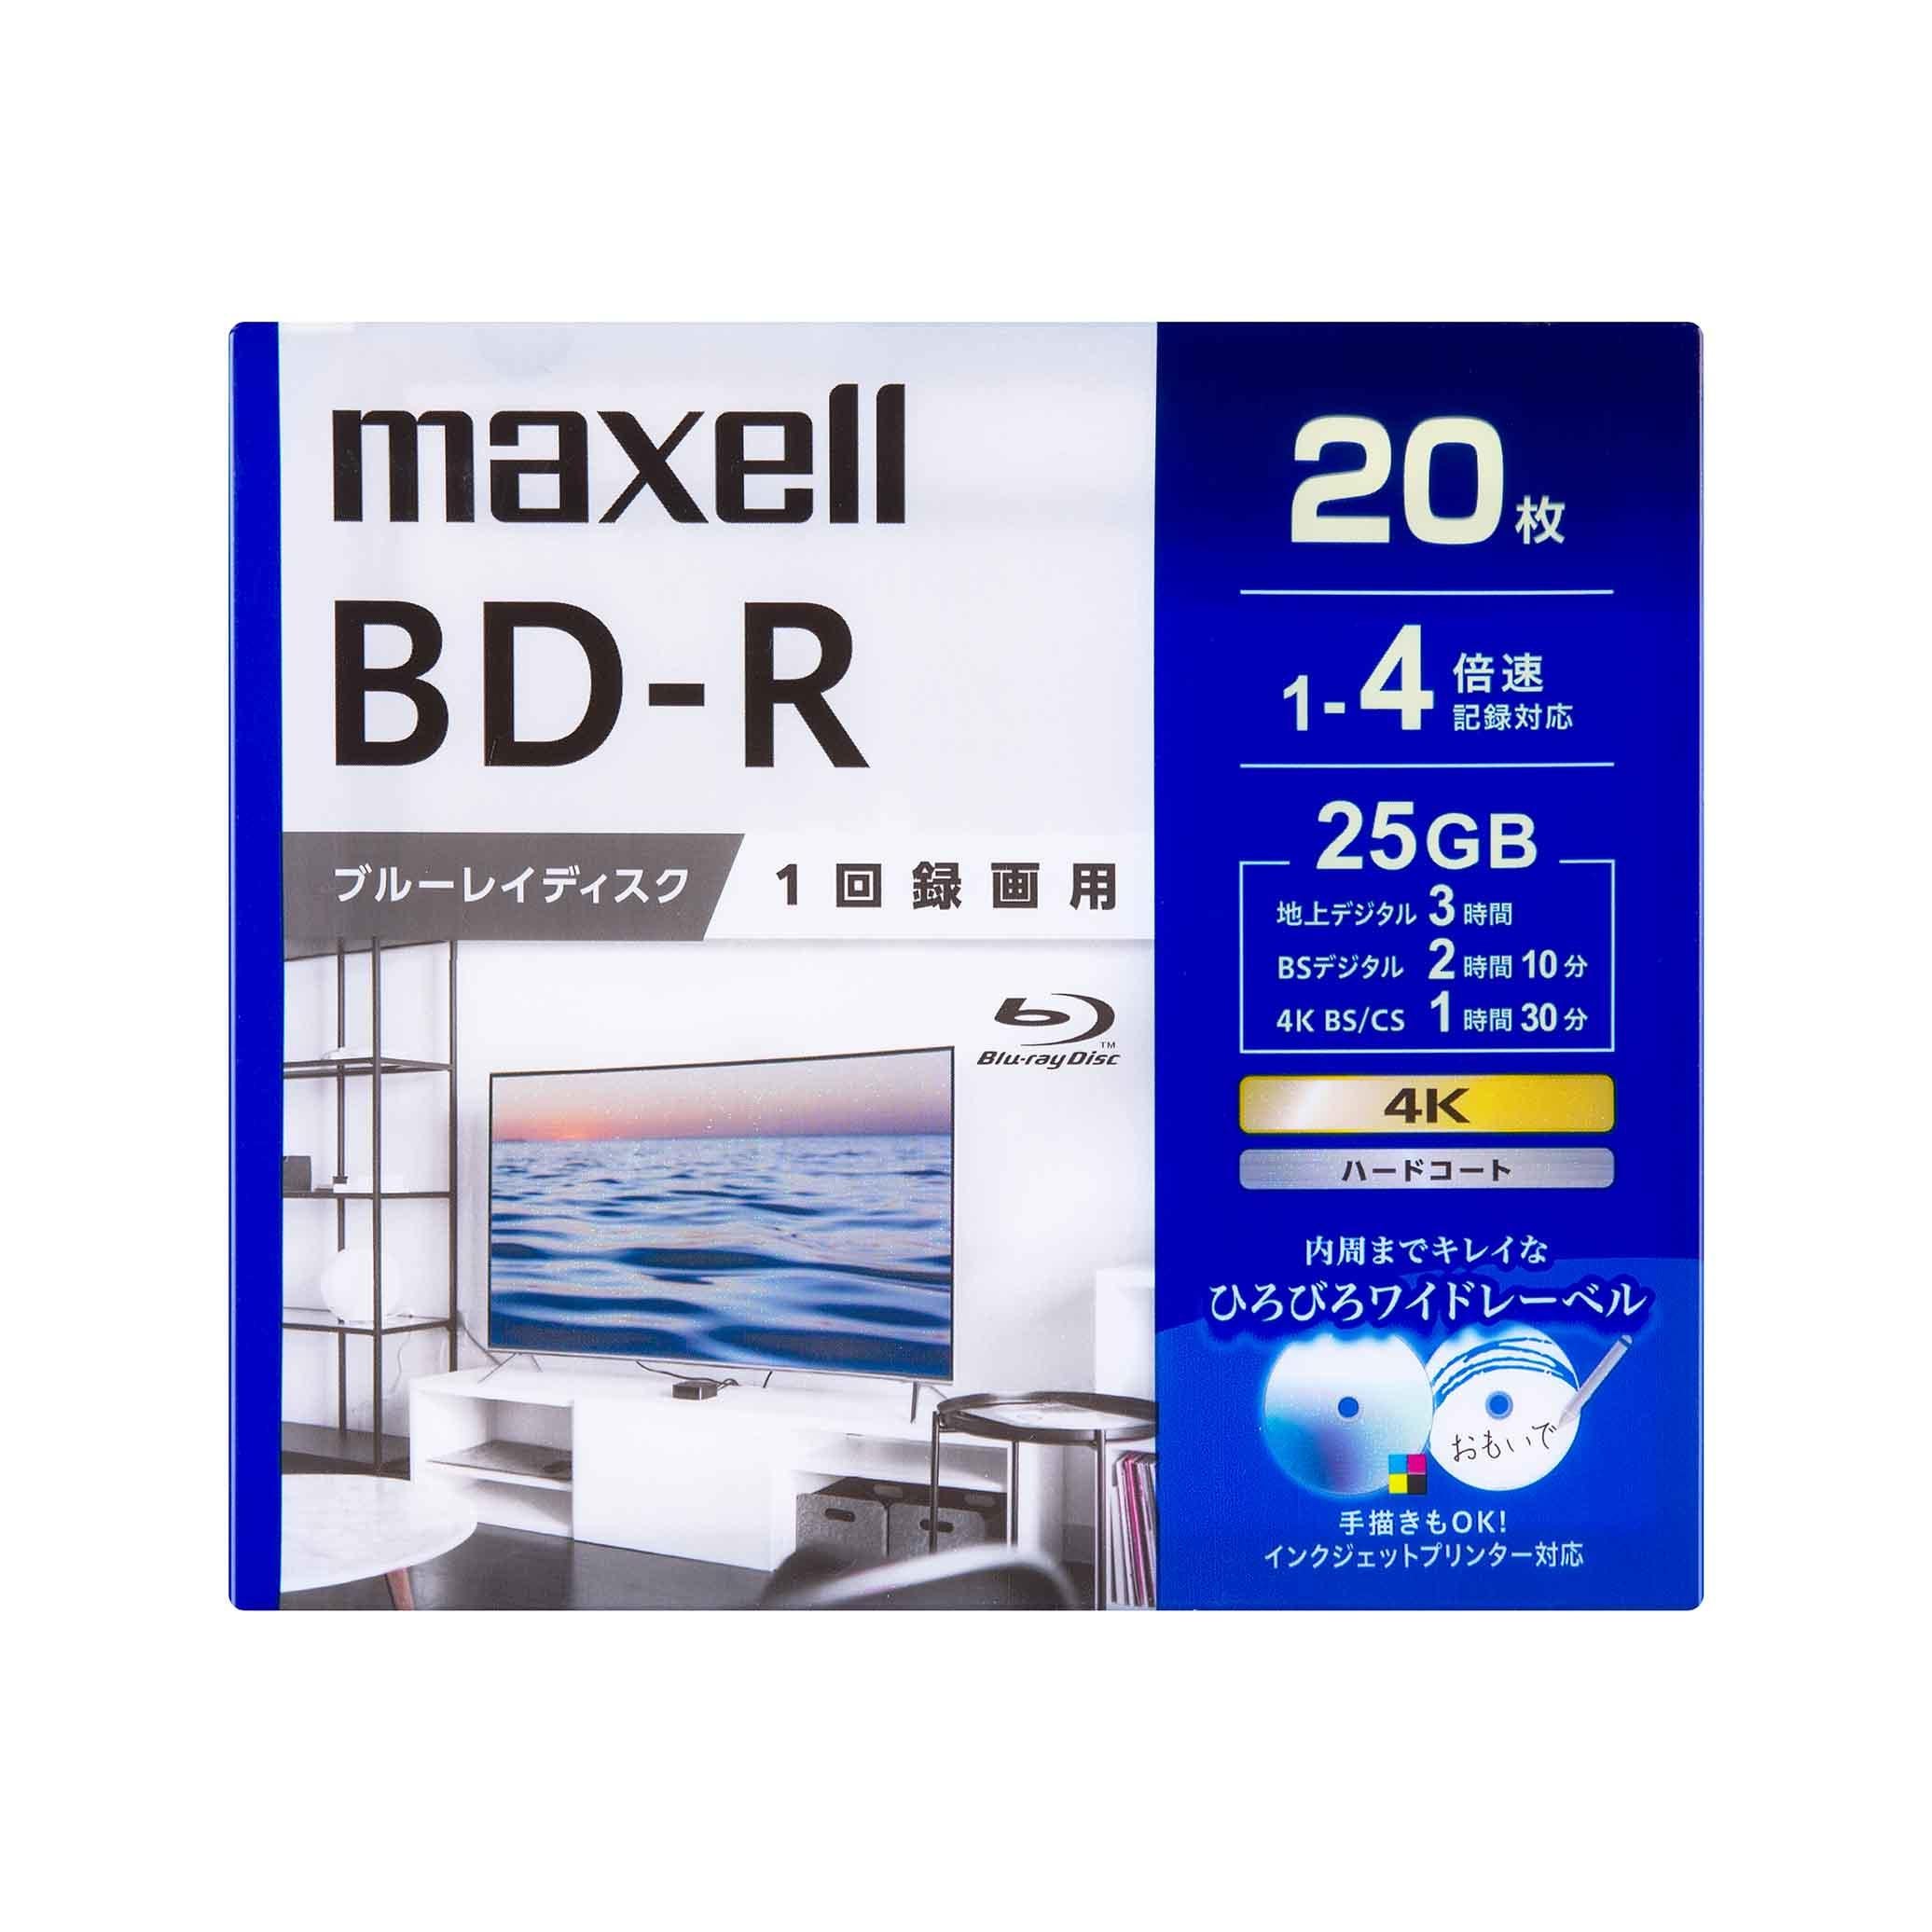 マクセル 録画用 ブルーレイディスク BD-R ひろびろワイドレーベルディスク (1～4倍速対応) 20枚入り BRV25WPG.20S